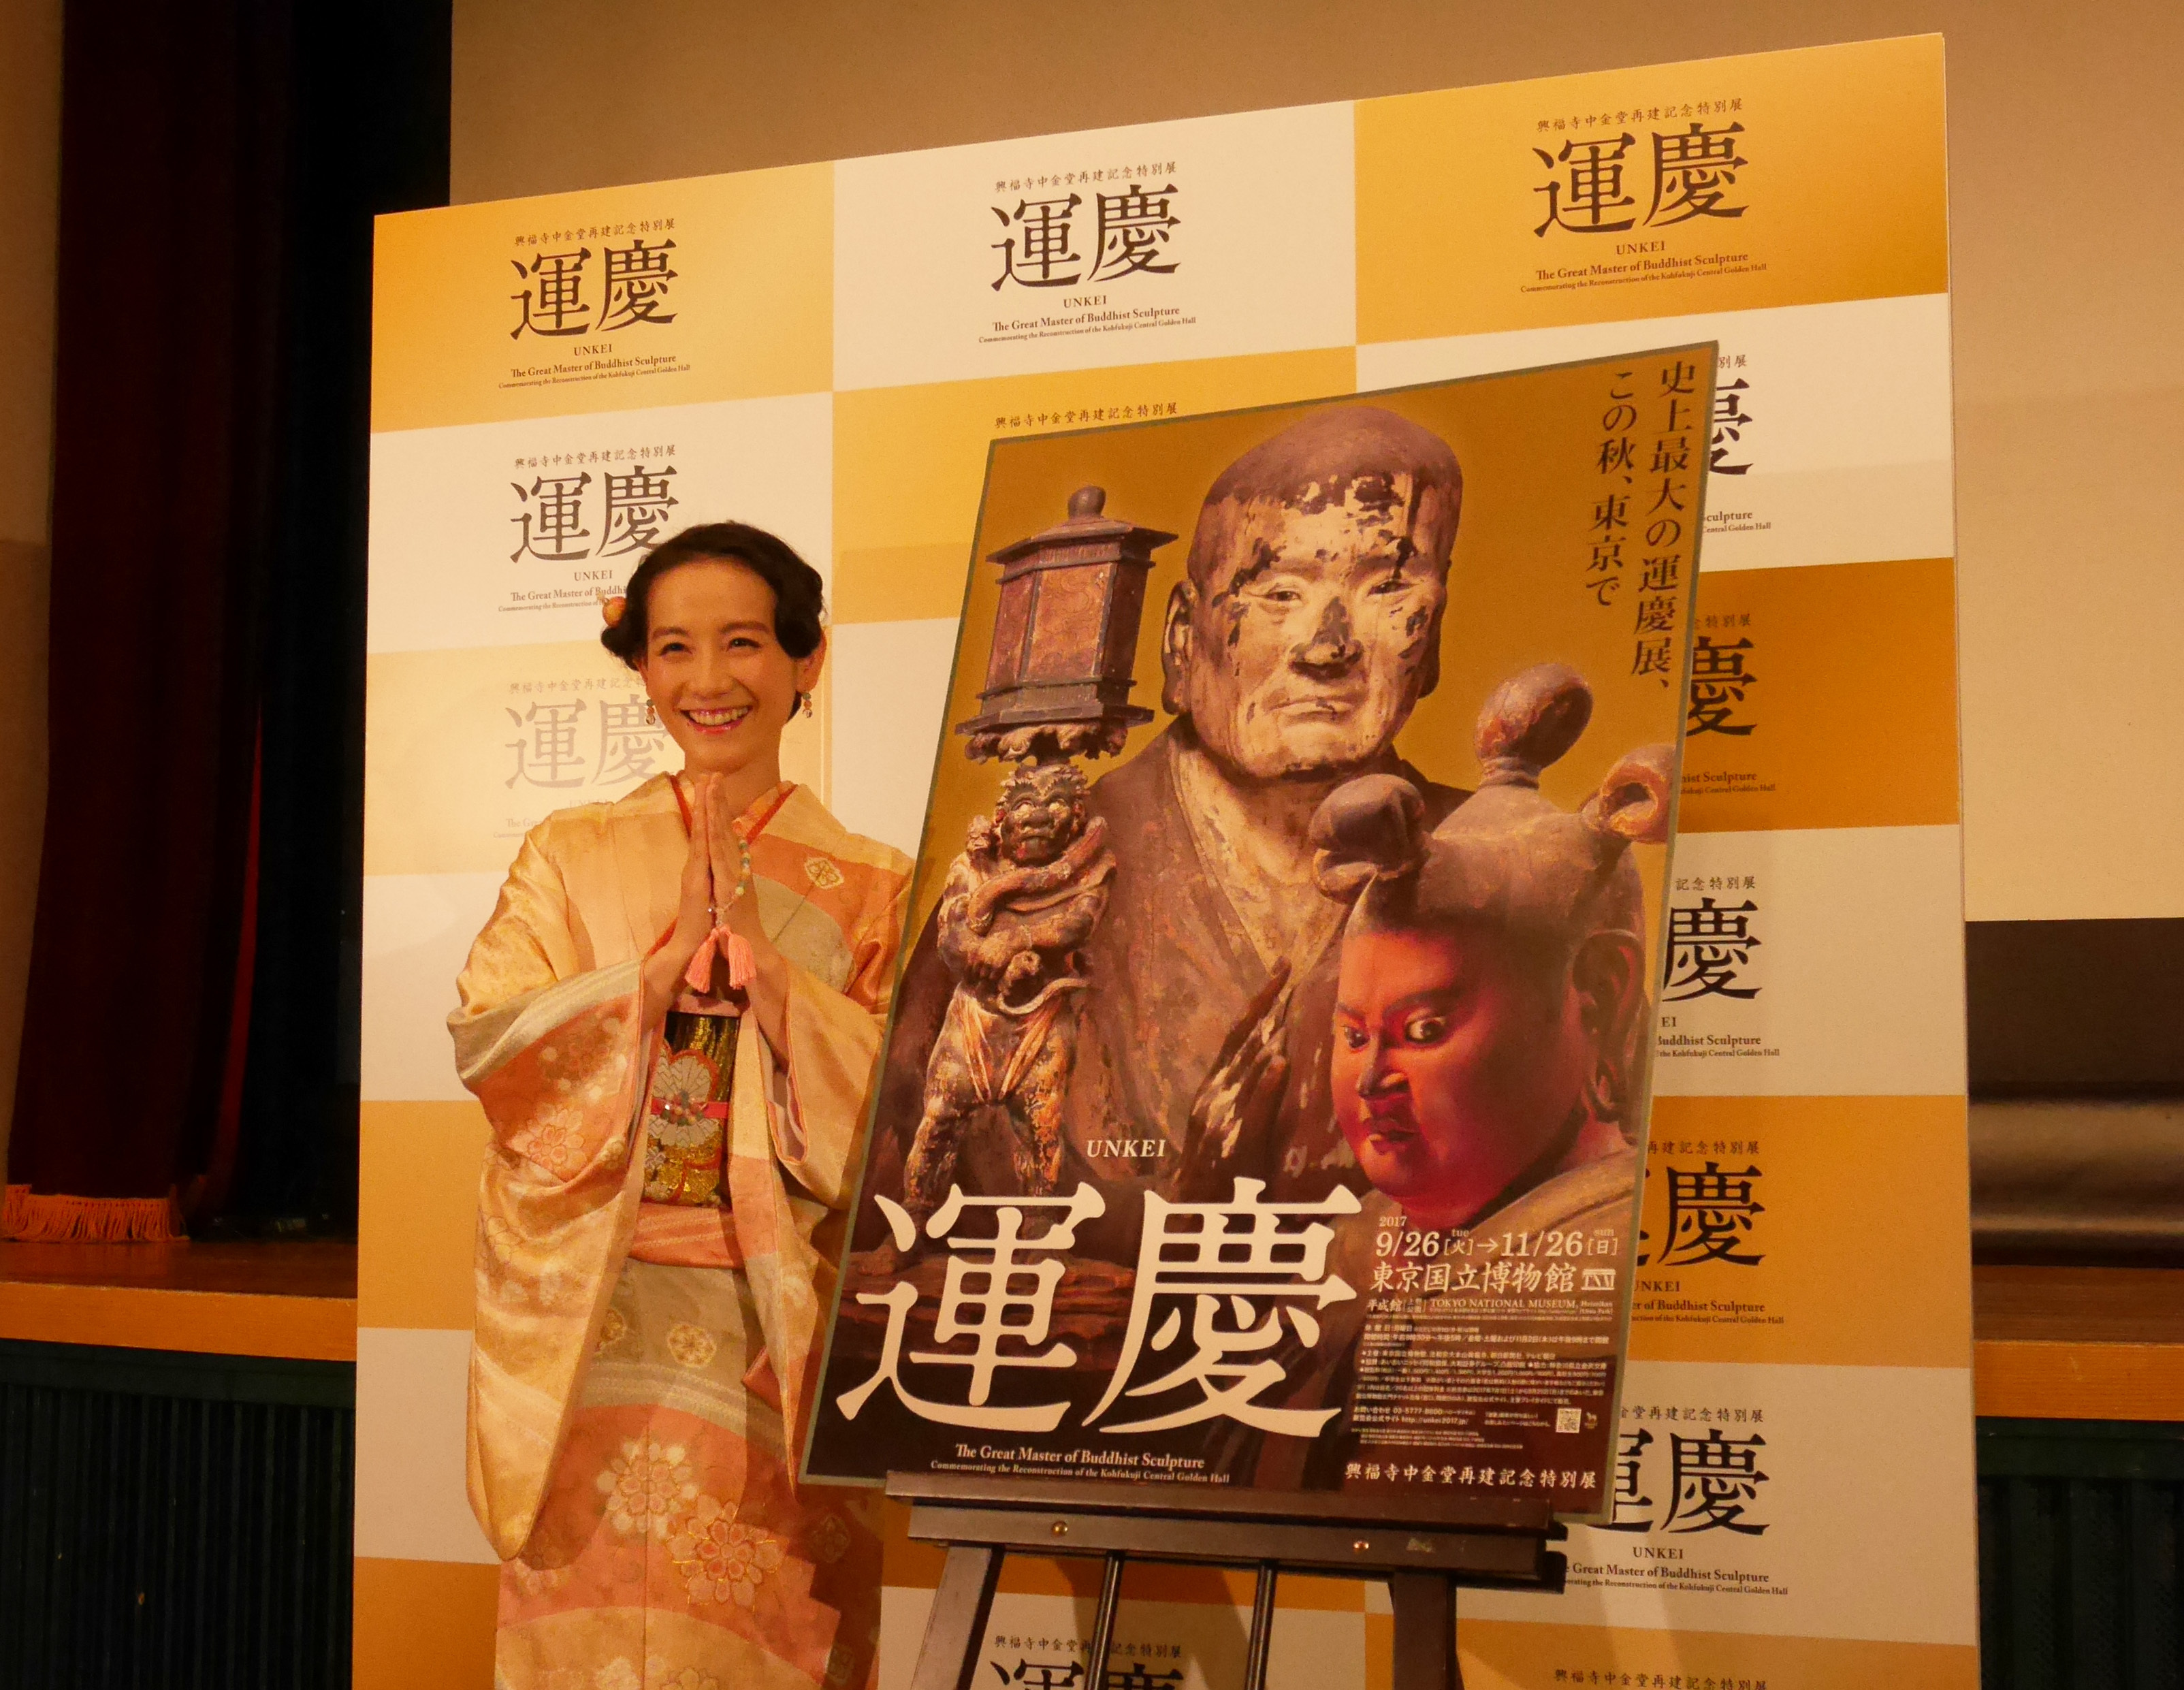 興福寺中金堂再建記念特別展『運慶』報道発表会に、スペシャルゲストとして篠原ともえが登壇